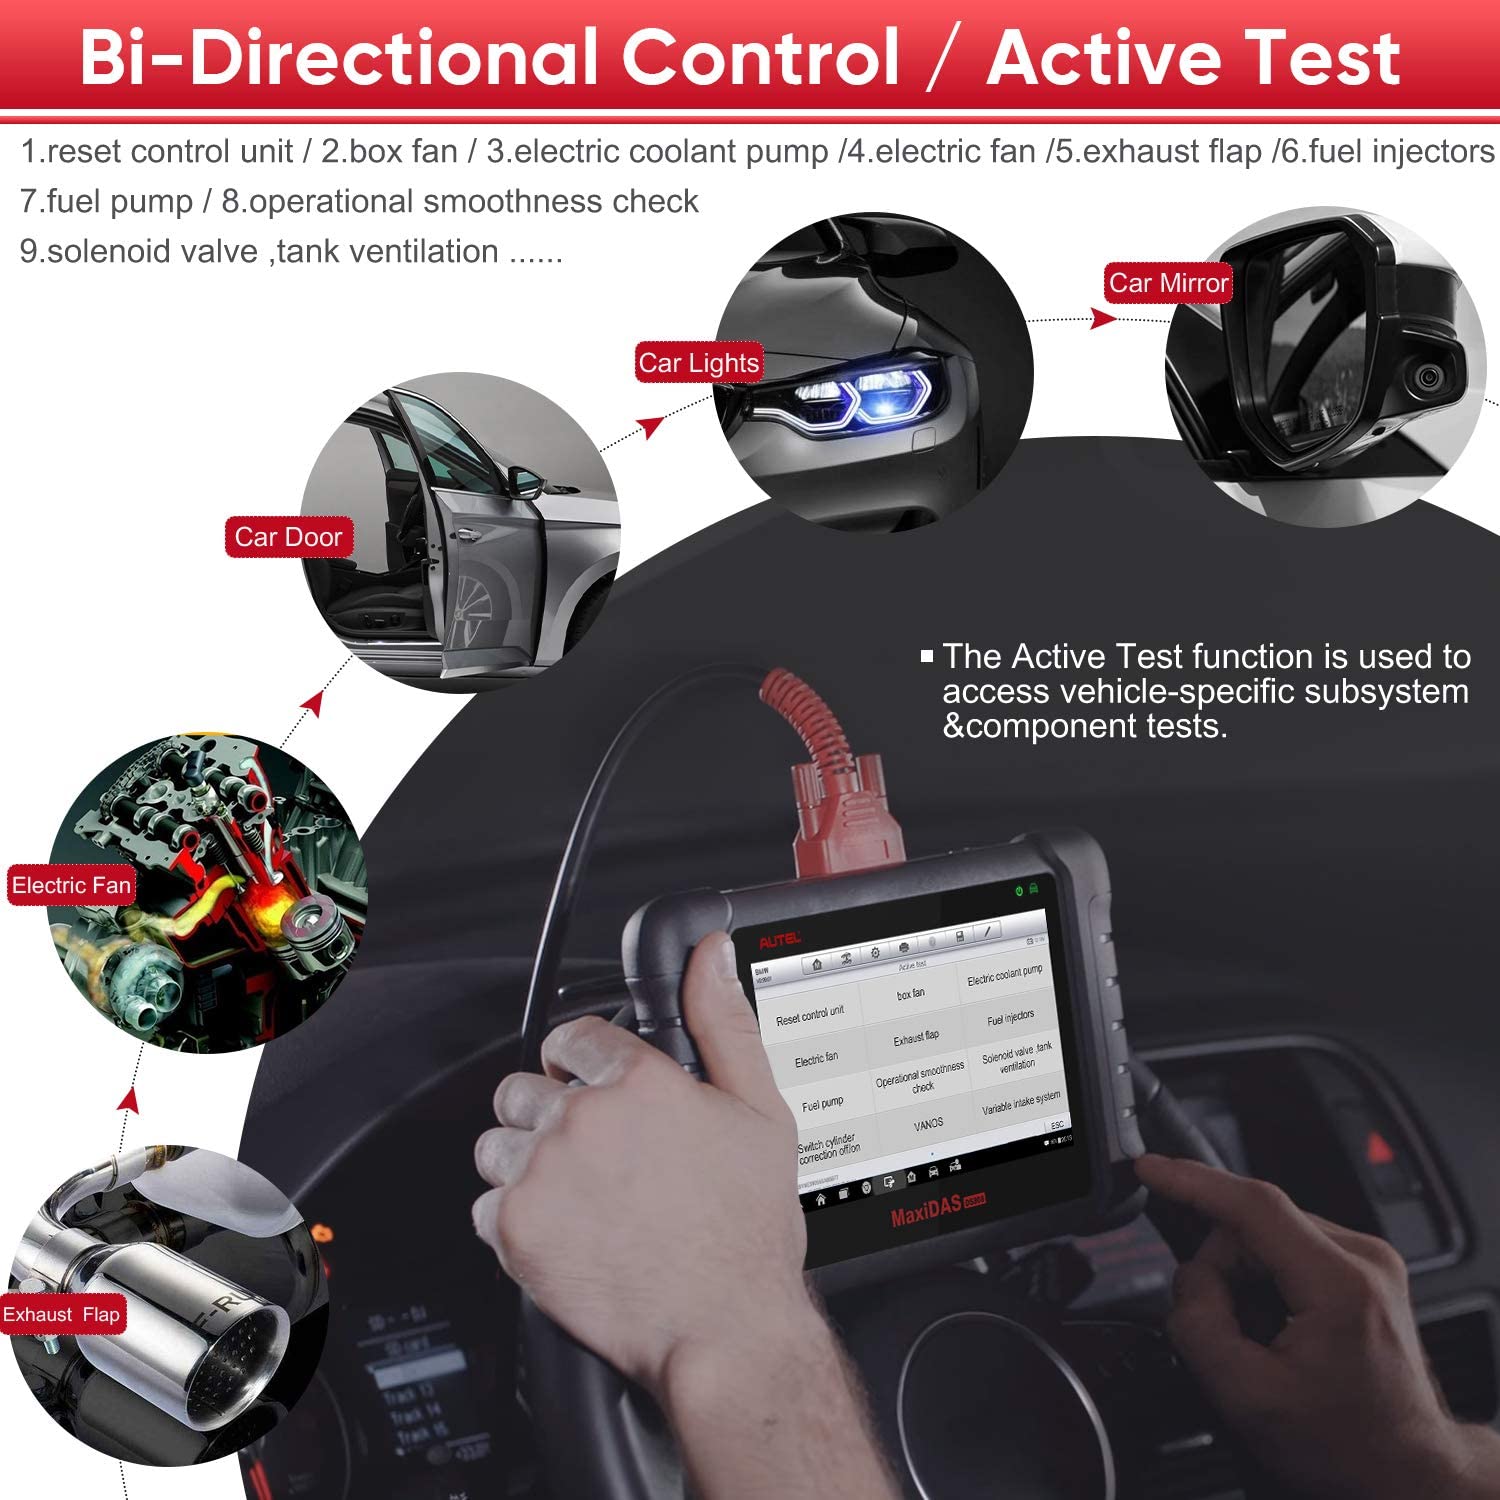 Bi-Directional Control Autel DS808K